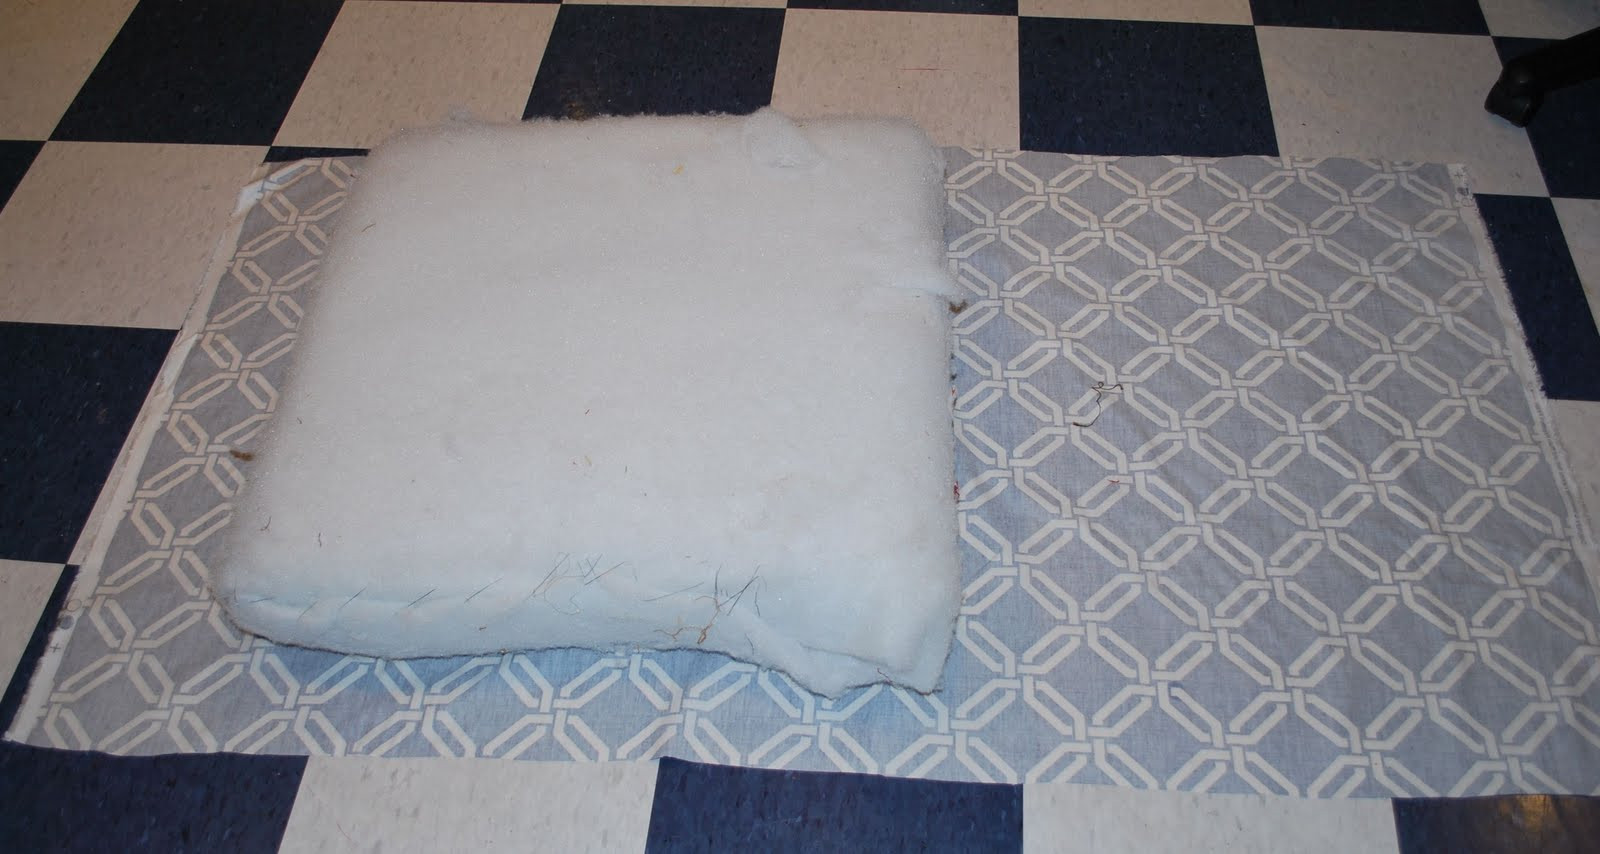 DIY Outdoor Cushions No Sew
 No Sew Sofa Cushion Covers Diy Outdoor Pillows No Sewing